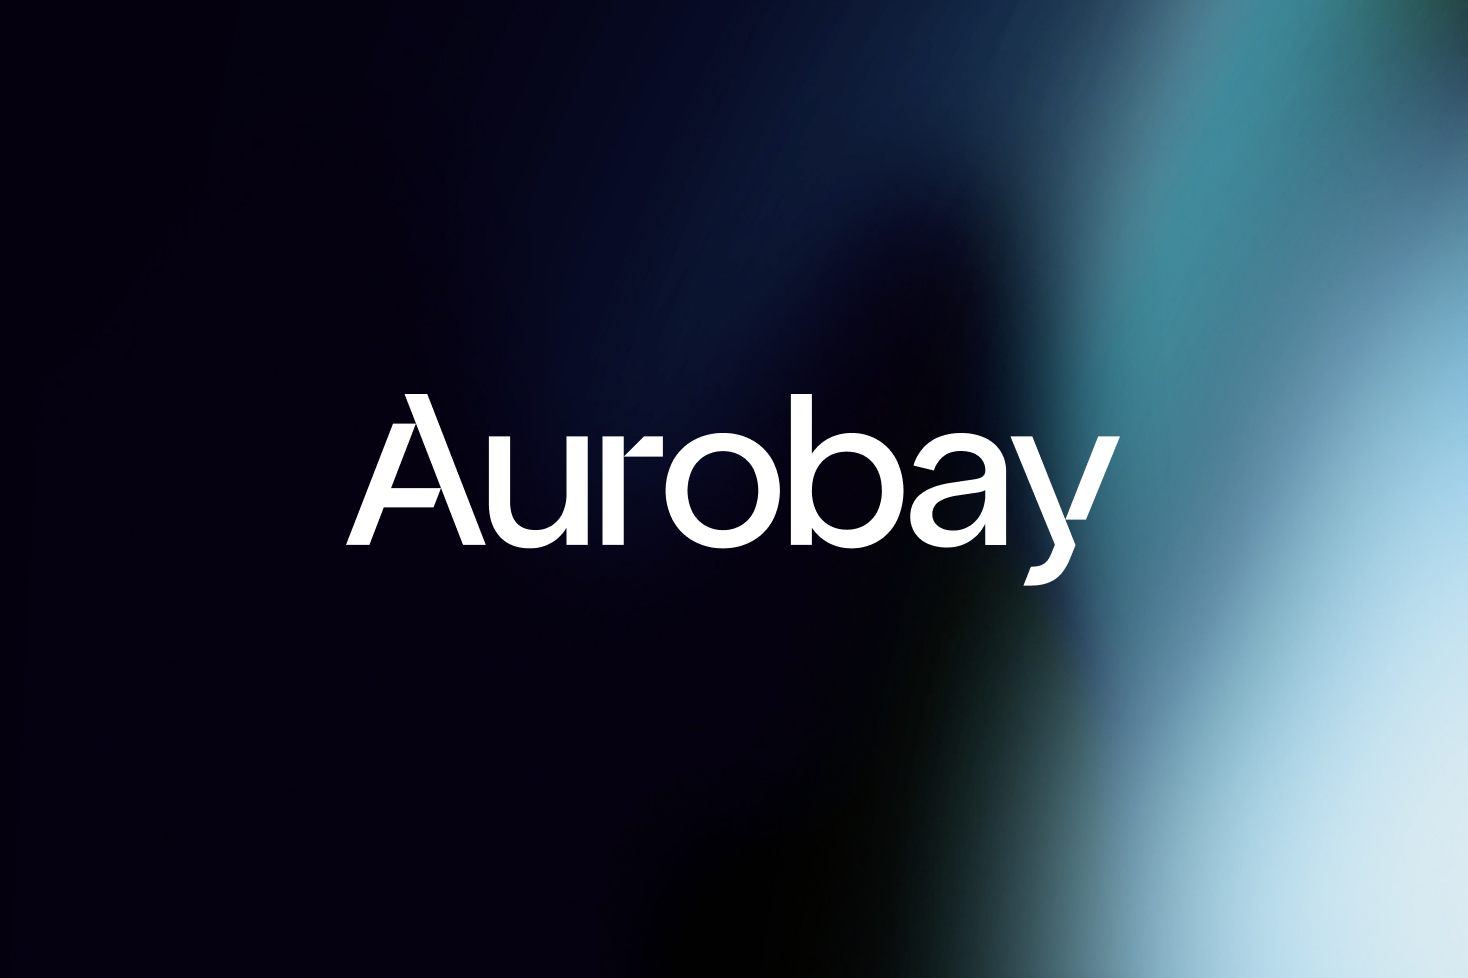 Aurobay